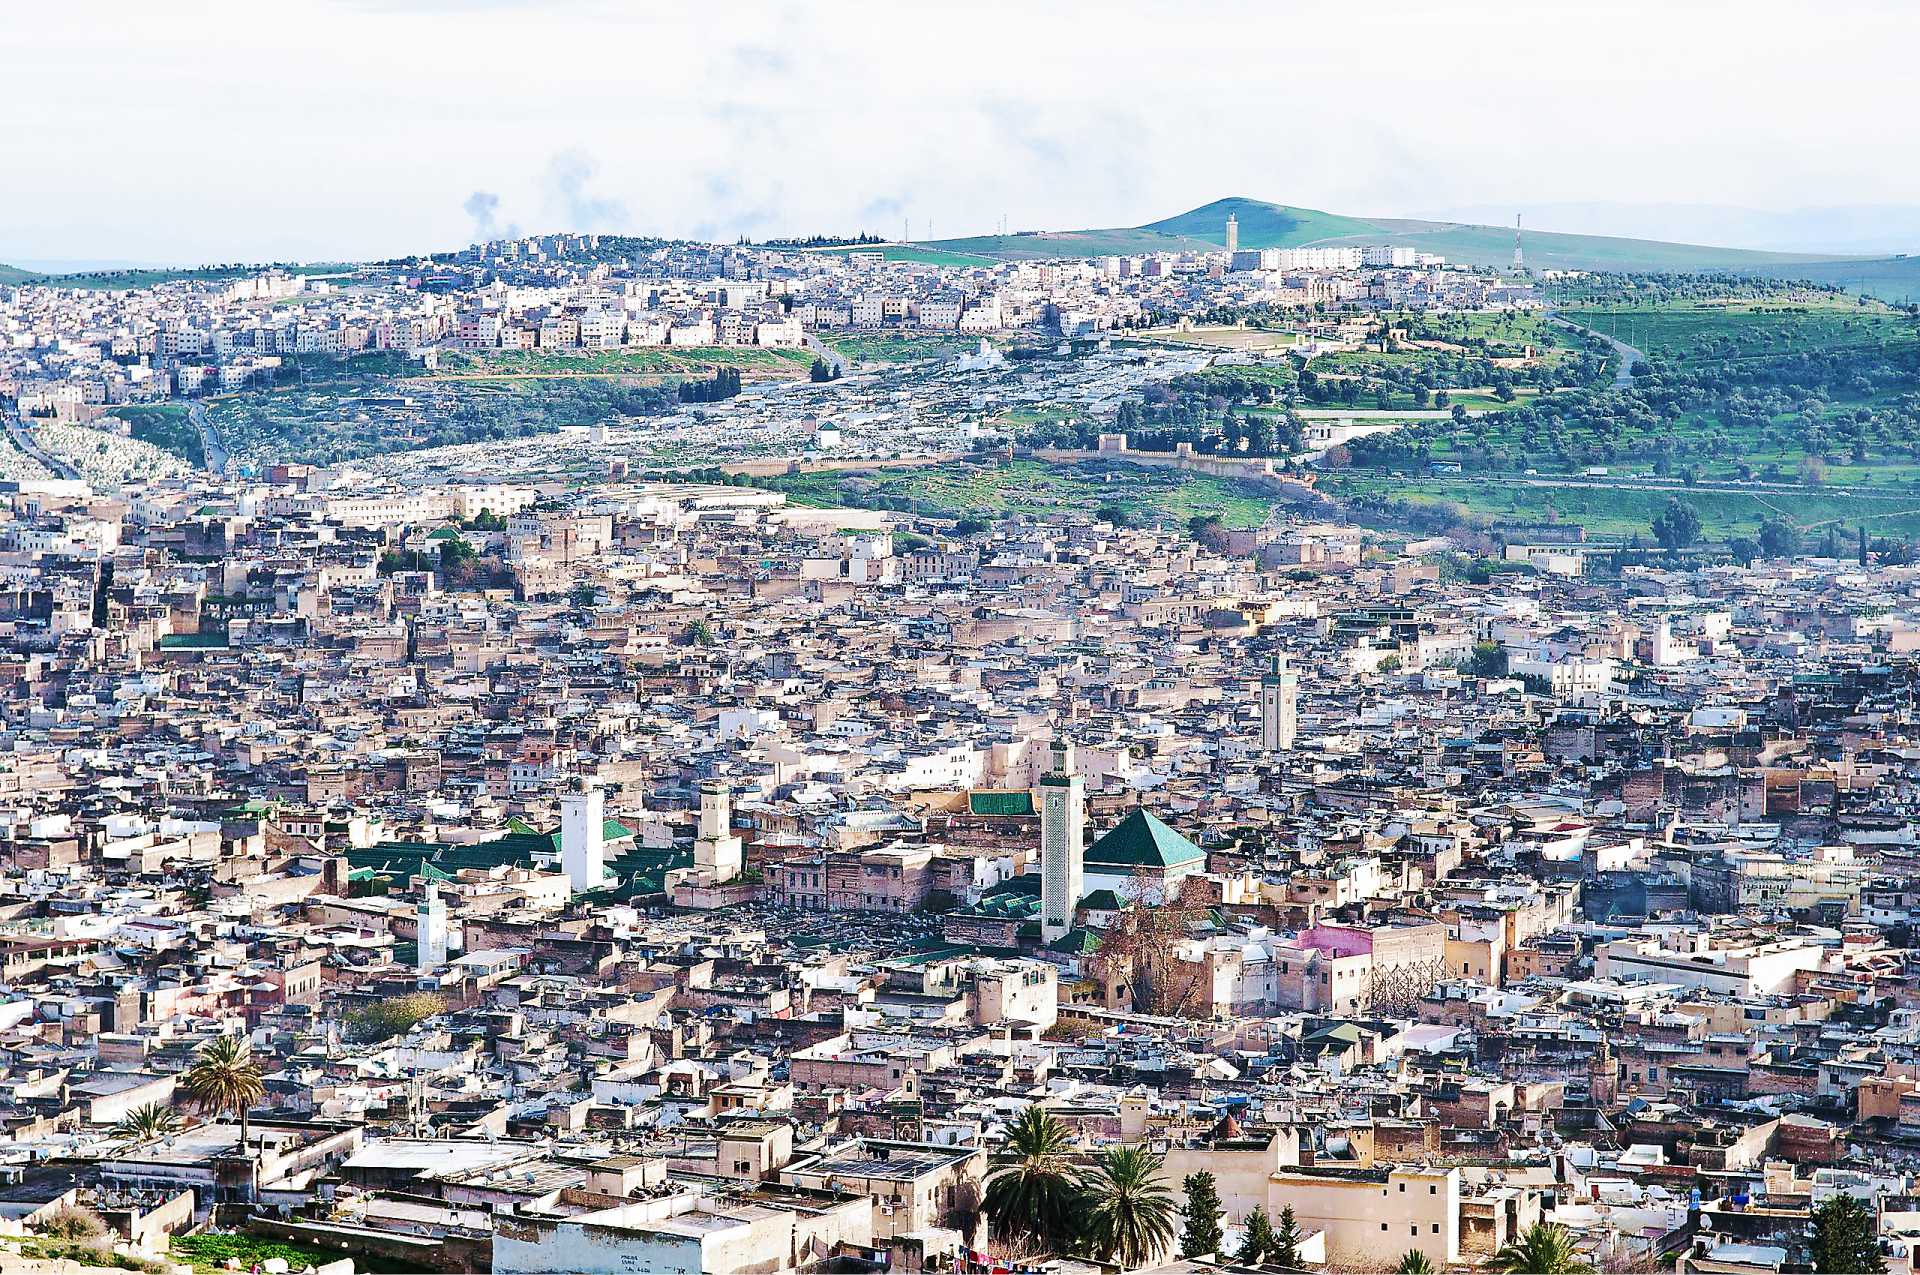 Khám phá Fes, thành phố cổ có di tích được cả UNESCO và kỷ lục Guinness thế giới vinh danh - Ảnh 2.